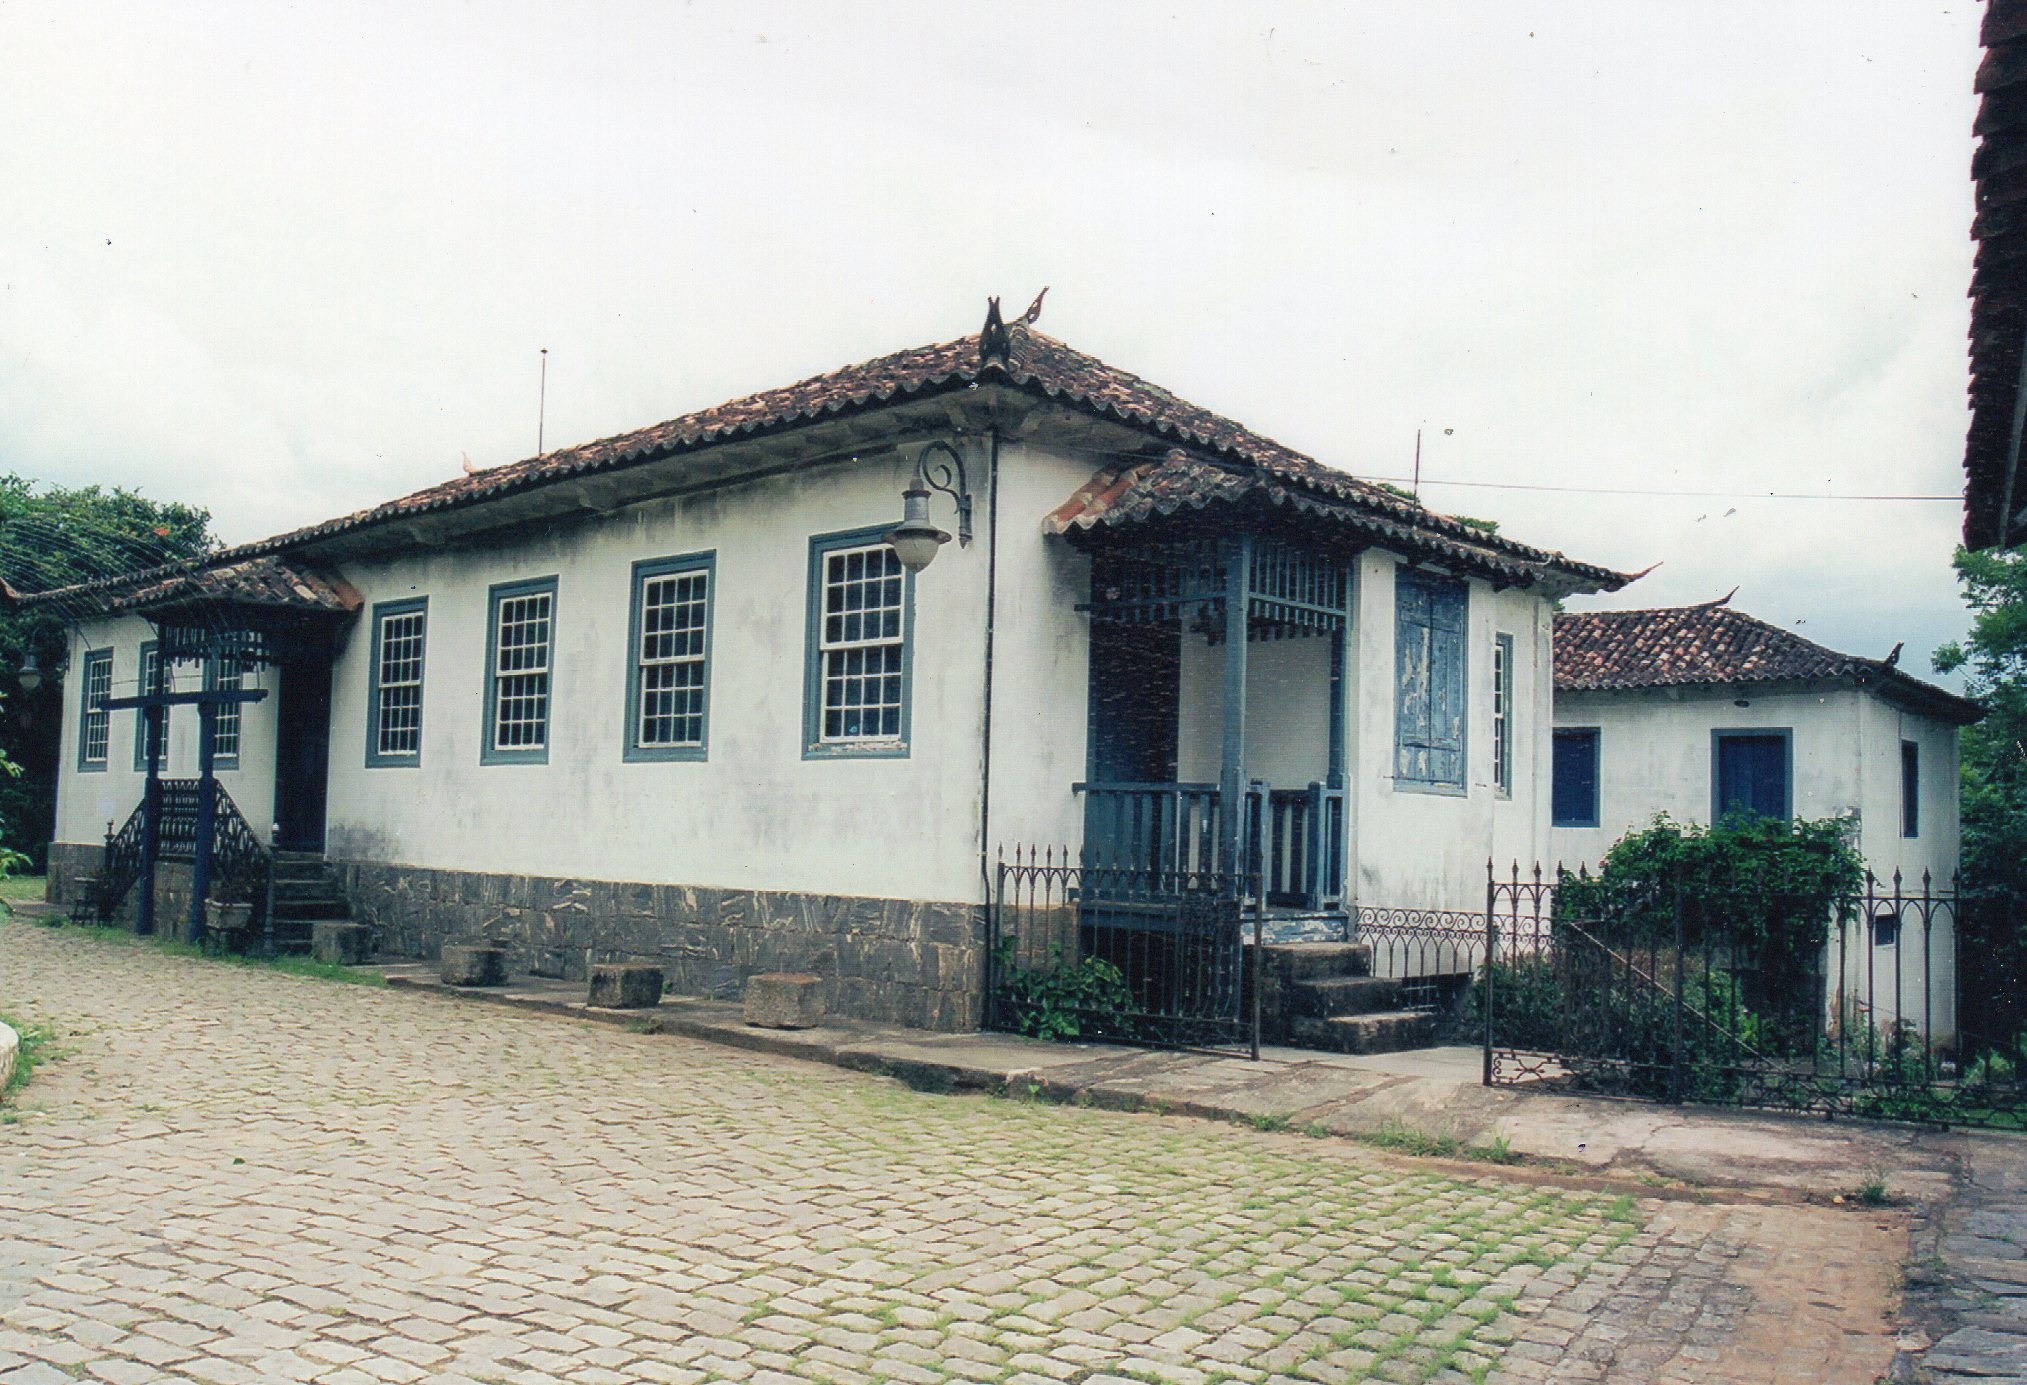 Fazenda Santa Rosa - Valença, RJ - (Principal Rodrigues Guião)